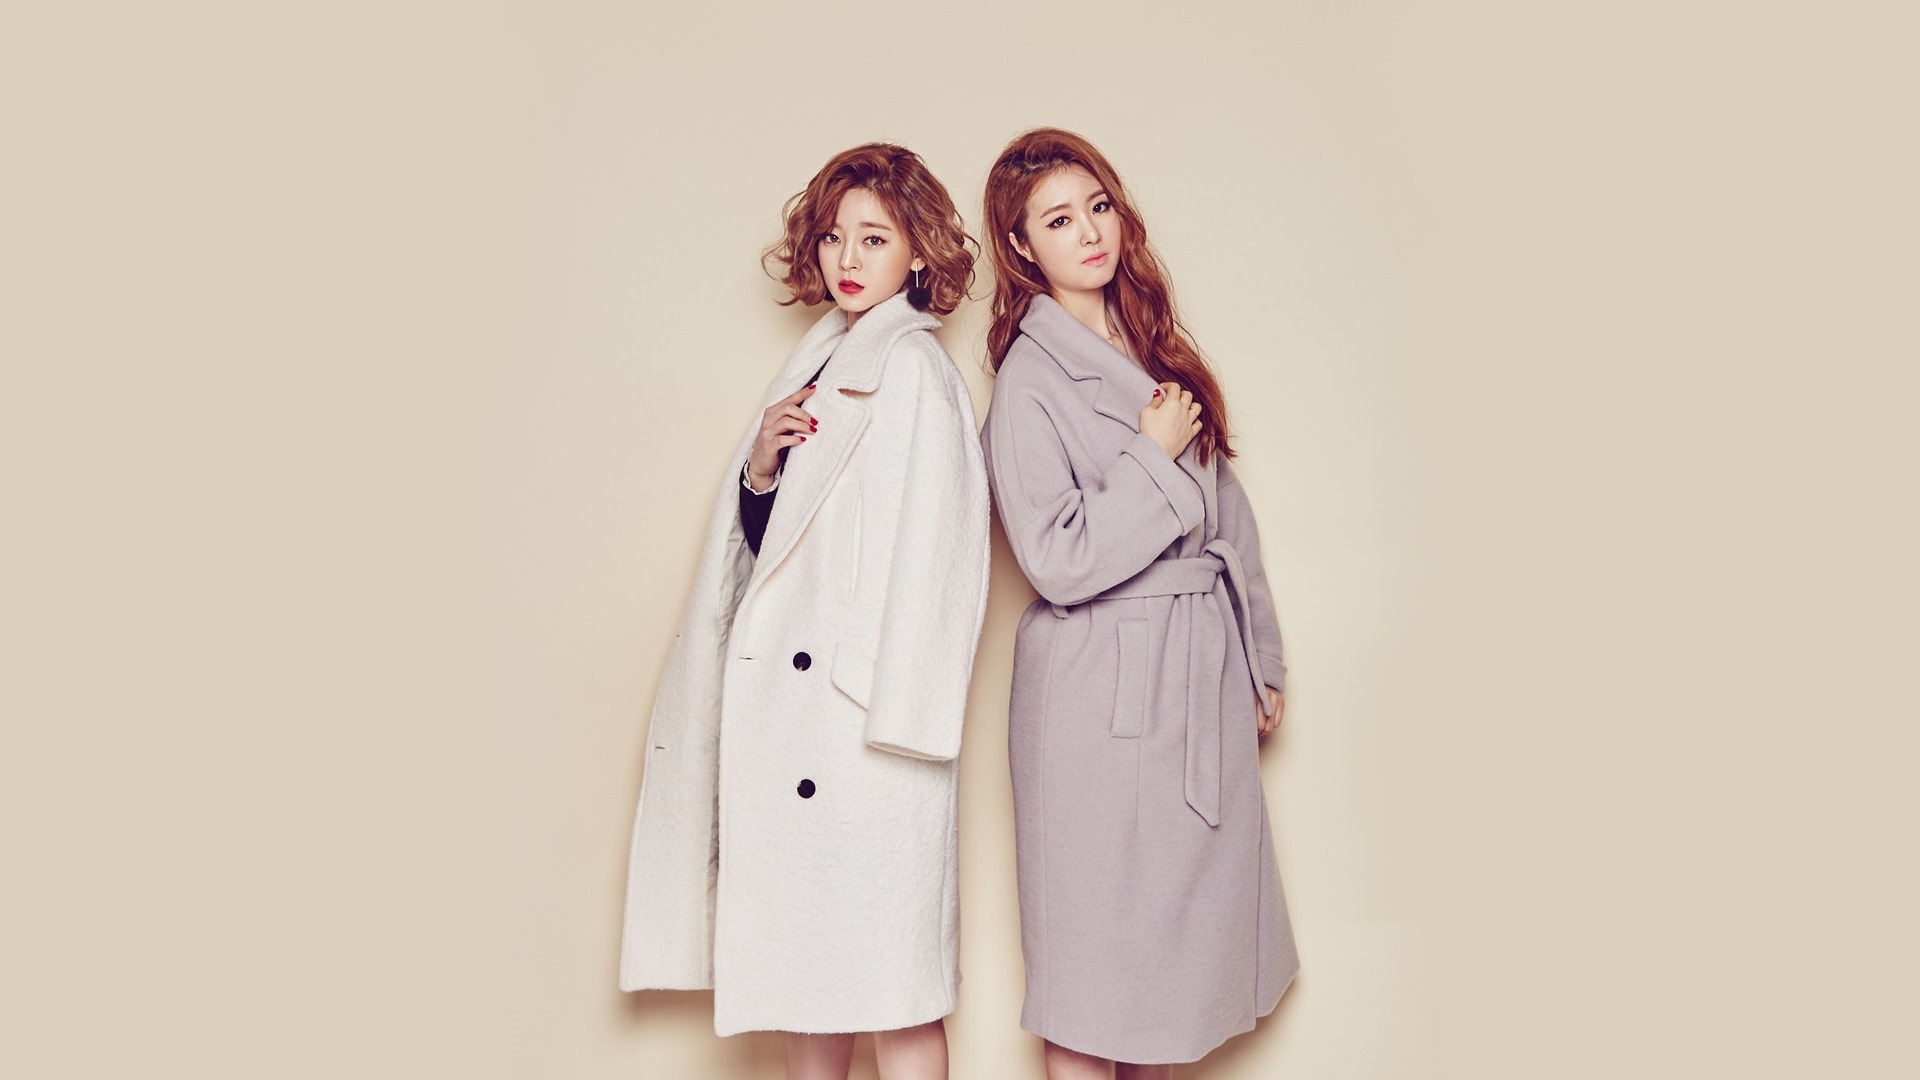 Tren-D Korean girls combination HD wallpapers #8 - 1920x1080